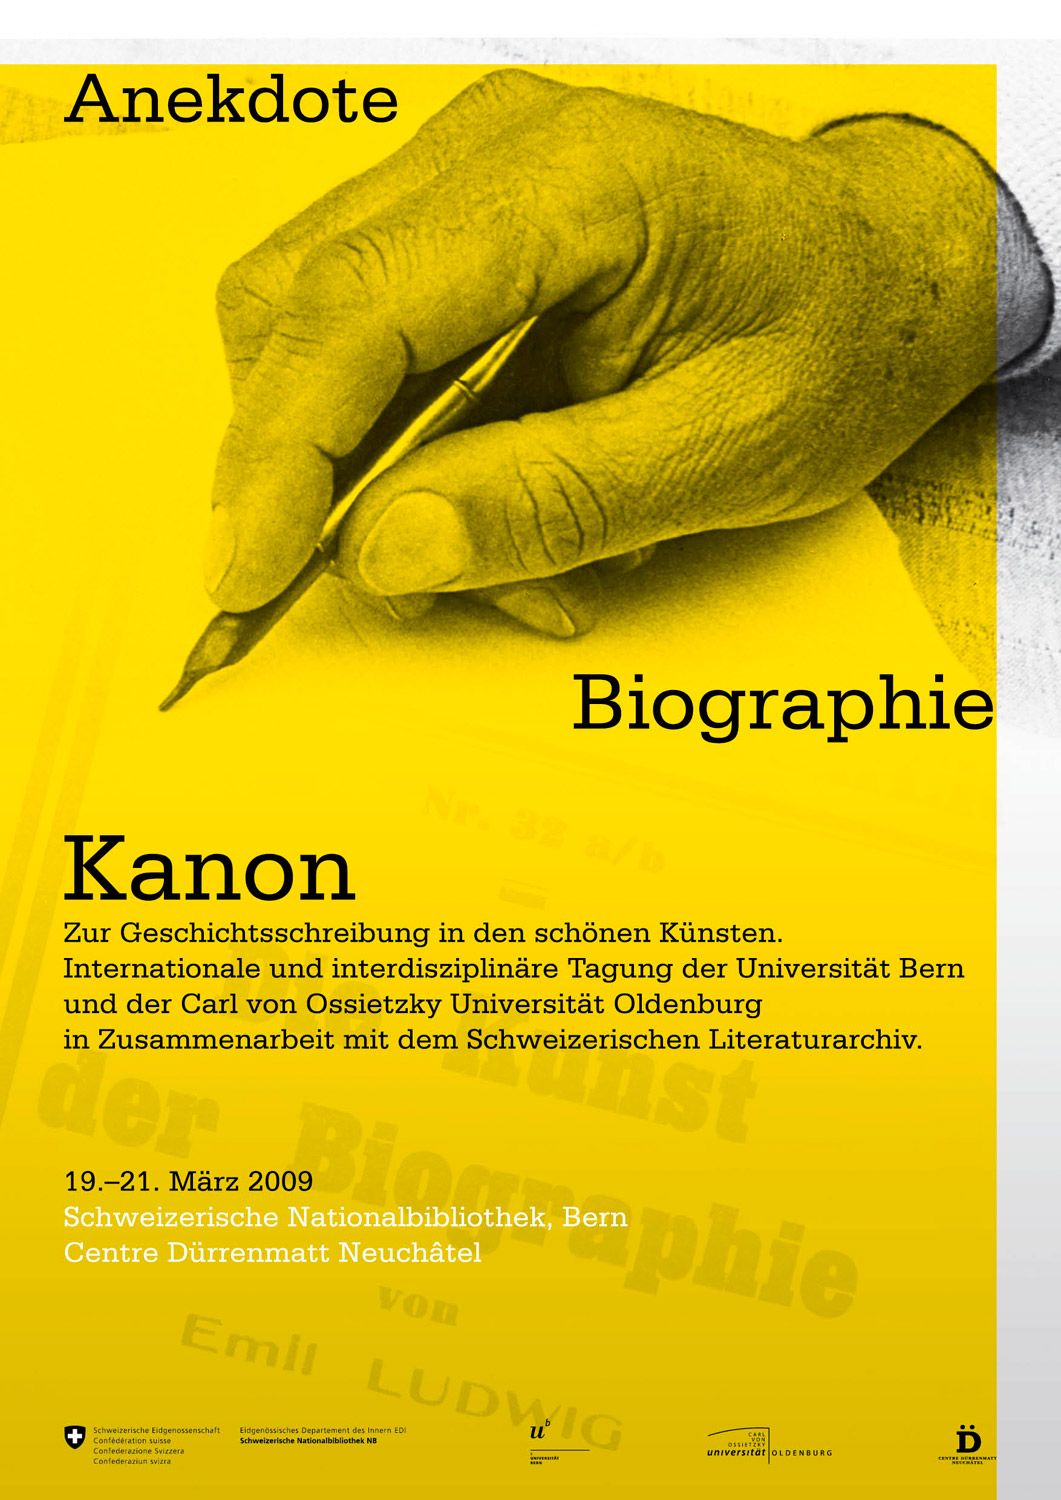 Schweizerische Nationalbibliothek. Anekdote, Biographie, Kanon